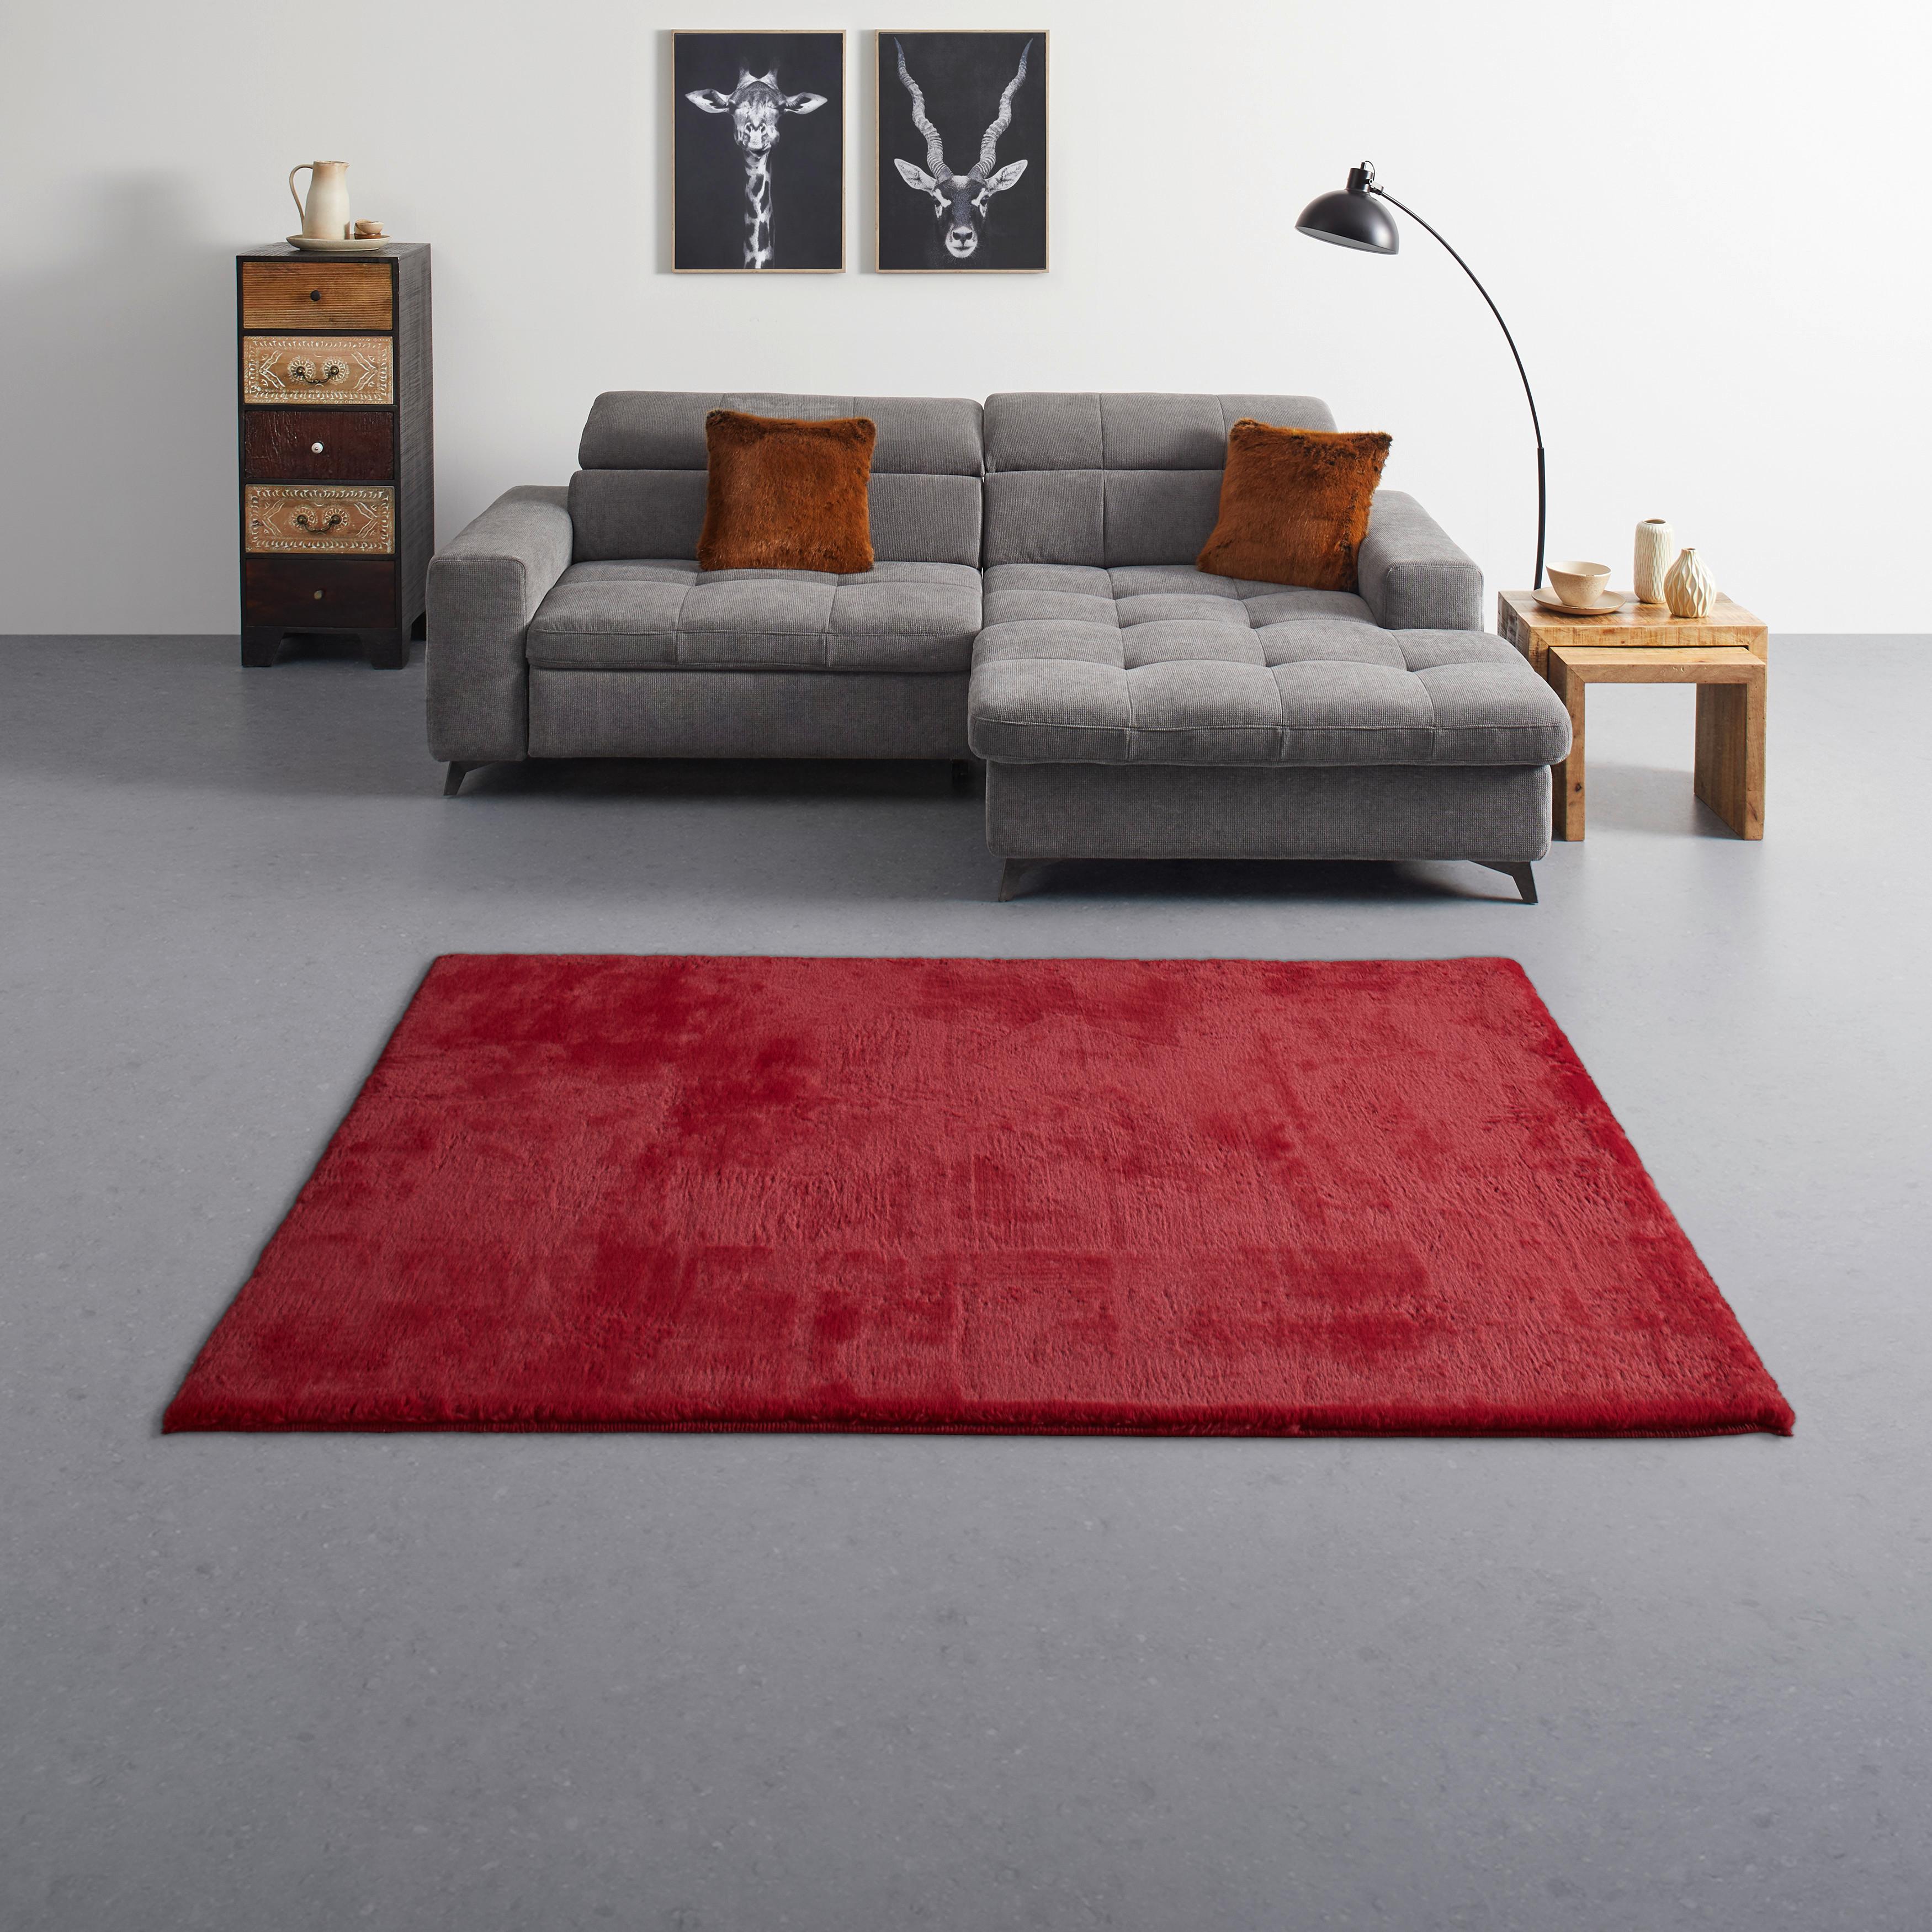 Umjetno  Krzno 80/150 Cm Caroline - crvena, Konventionell, tekstil (80/150cm) - Modern Living